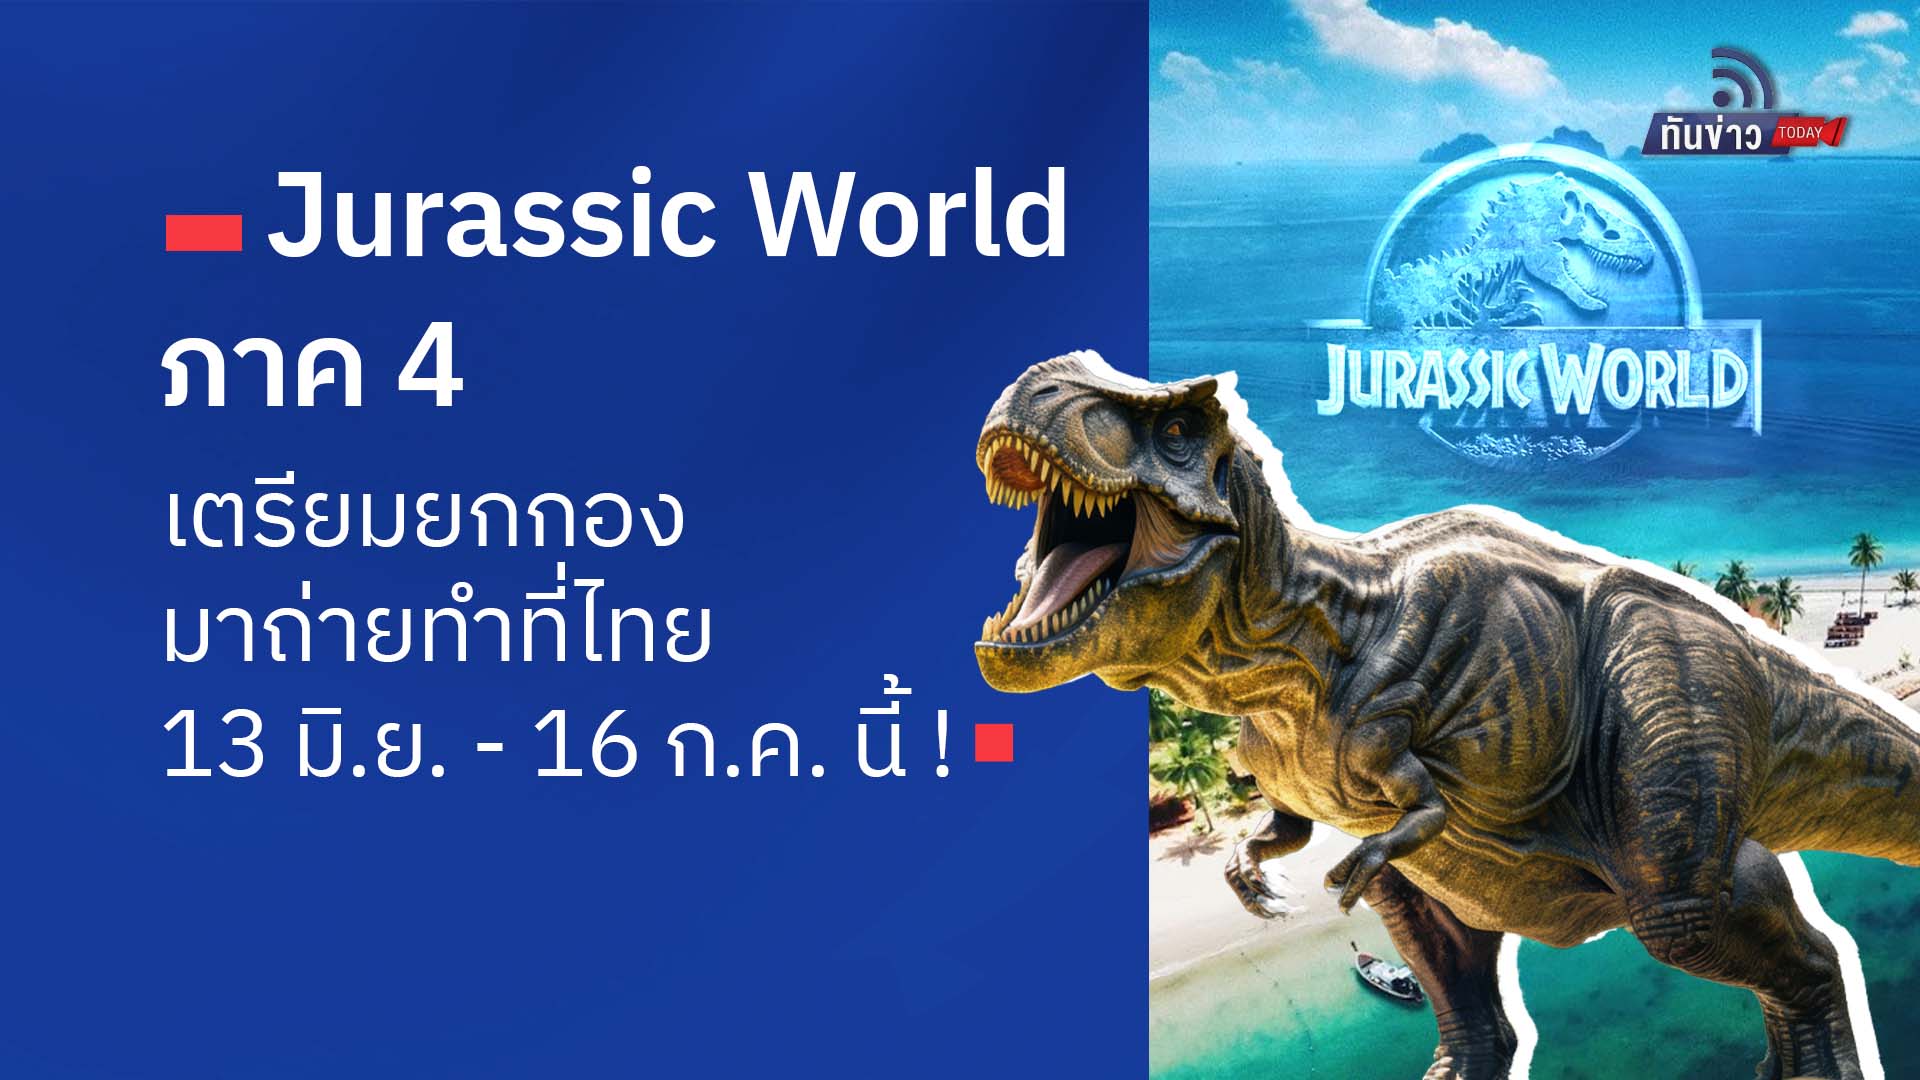 “Jurassic World ภาค 4” เตรียมยกกองมาถ่ายทำที่ไทย 13 มิ.ย. - 16 ก.ค.นี้!